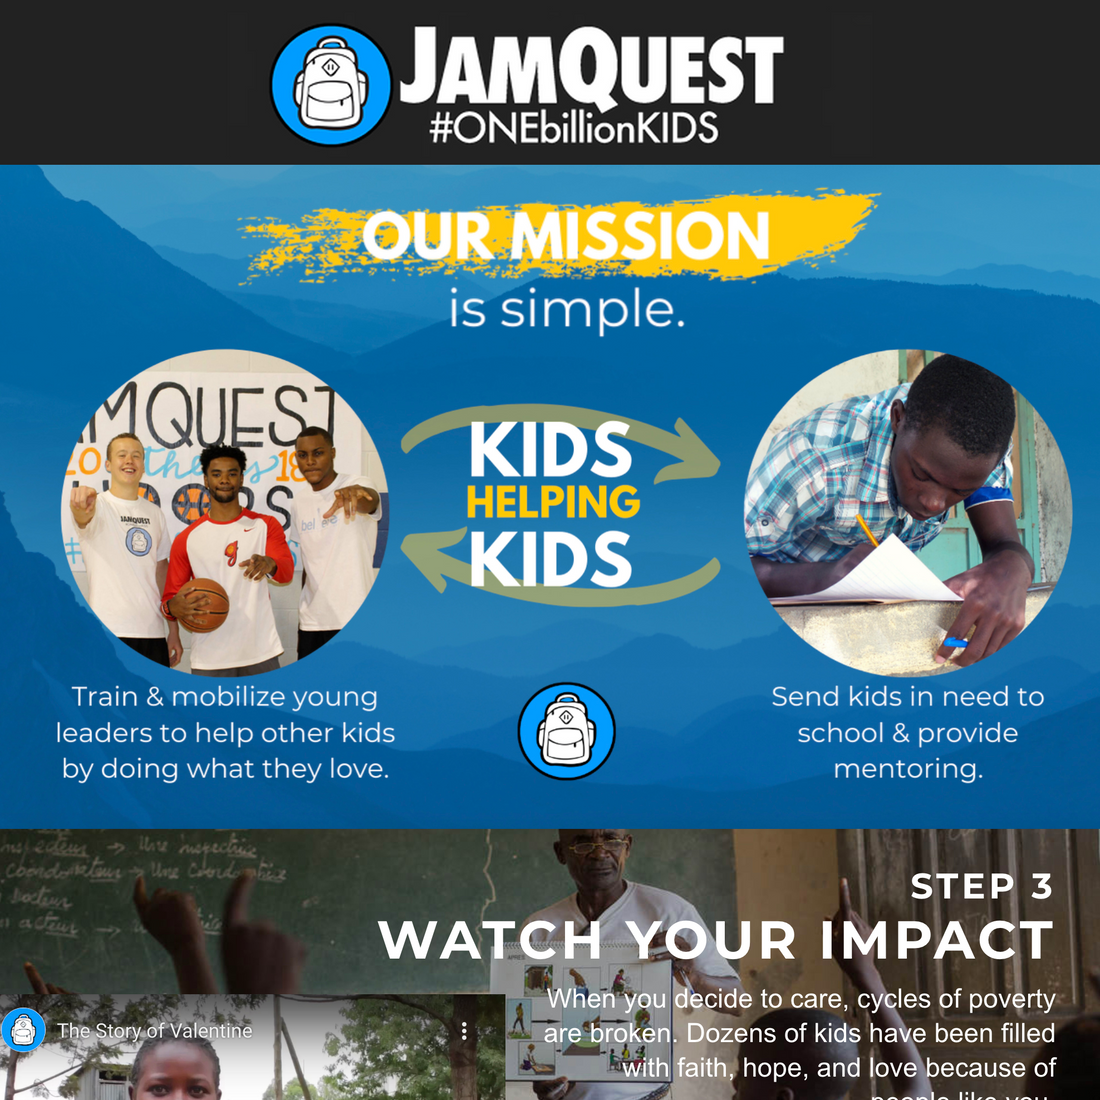 JAMQUEST'S MISSION TO EMPOWER KIDS